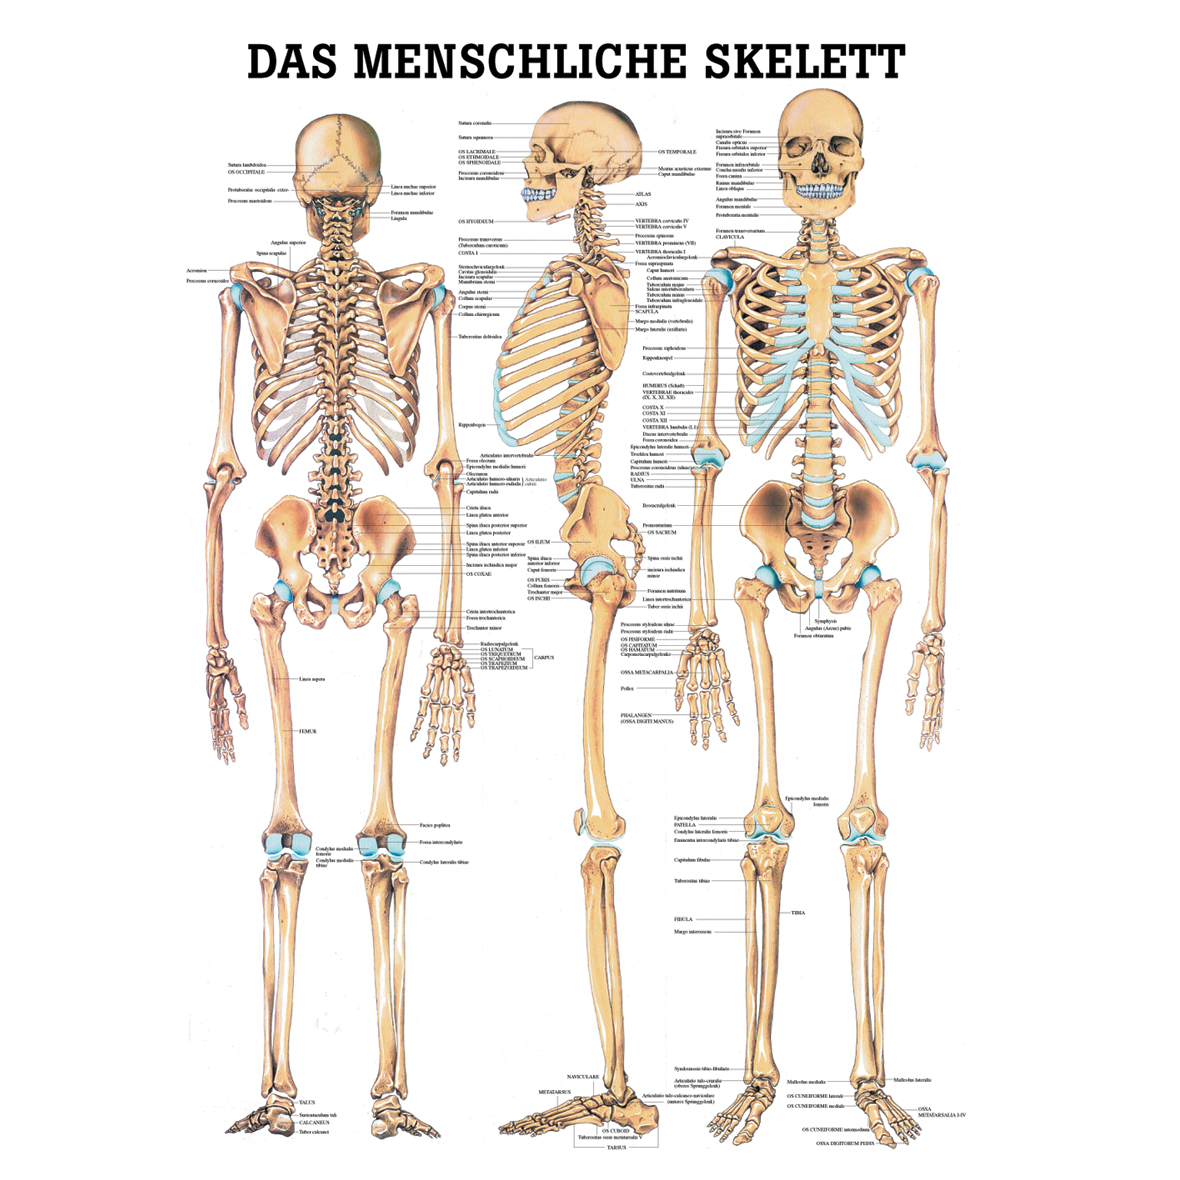 Anatomische Lehrtafel "Das menschliche Skelett"